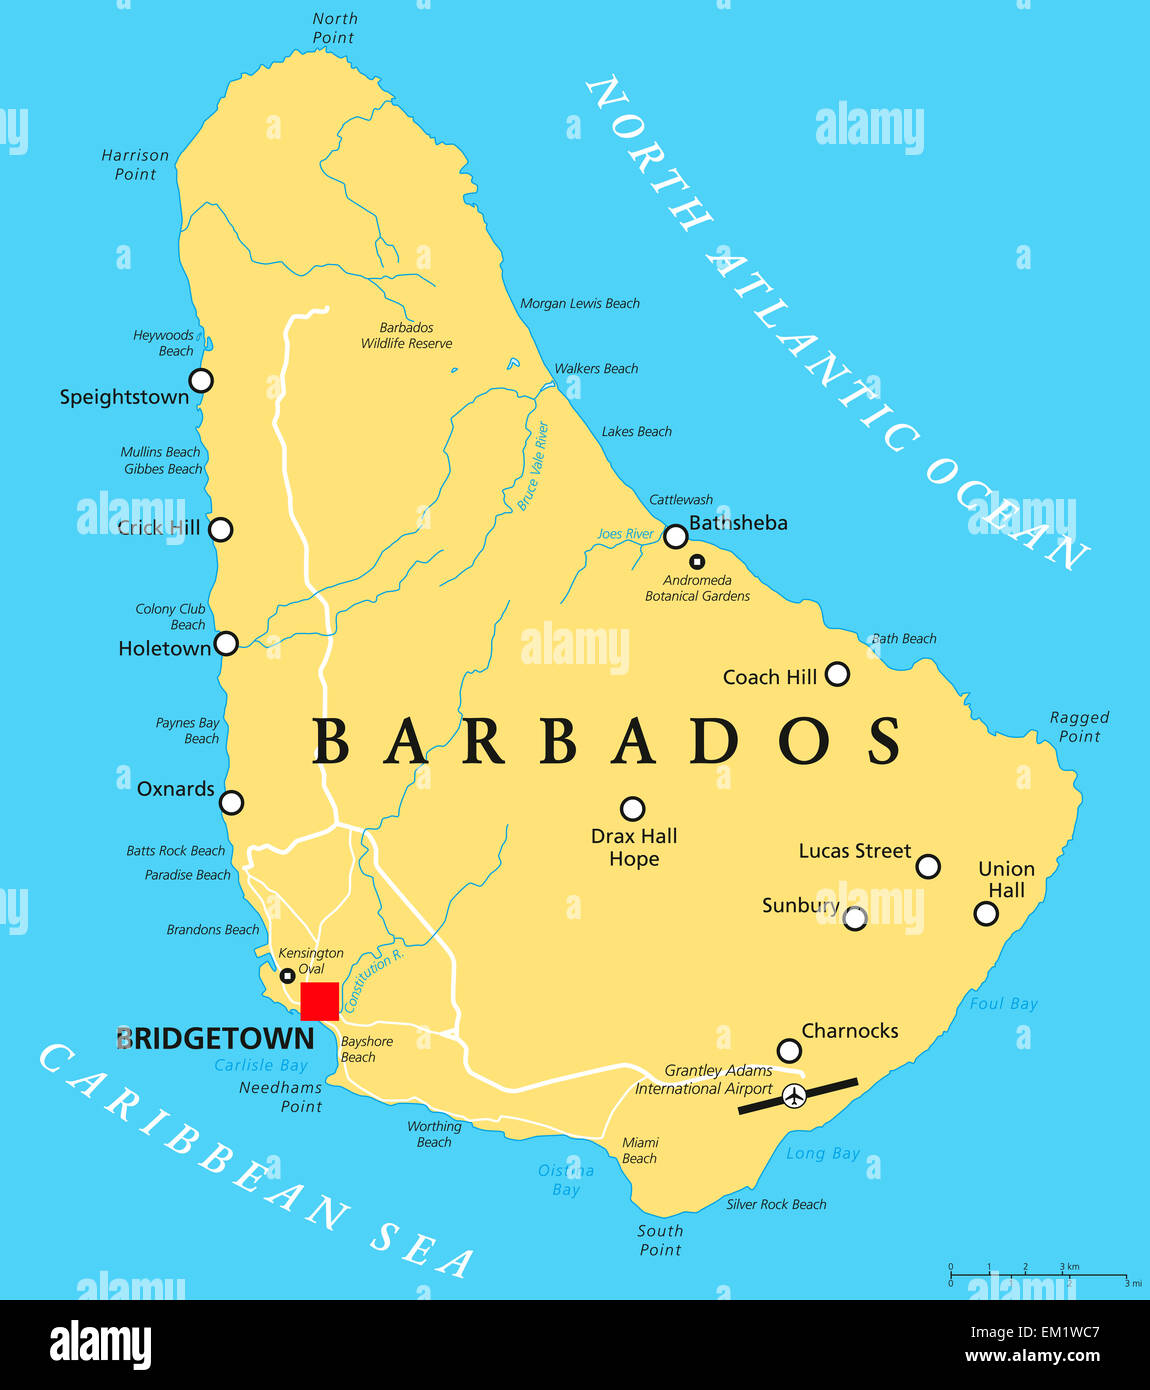 Barbados Mapa Político con la capital Bridgetown, con importantes ciudades, lugares y ríos. Rótulos En inglés y escalado. Foto de stock